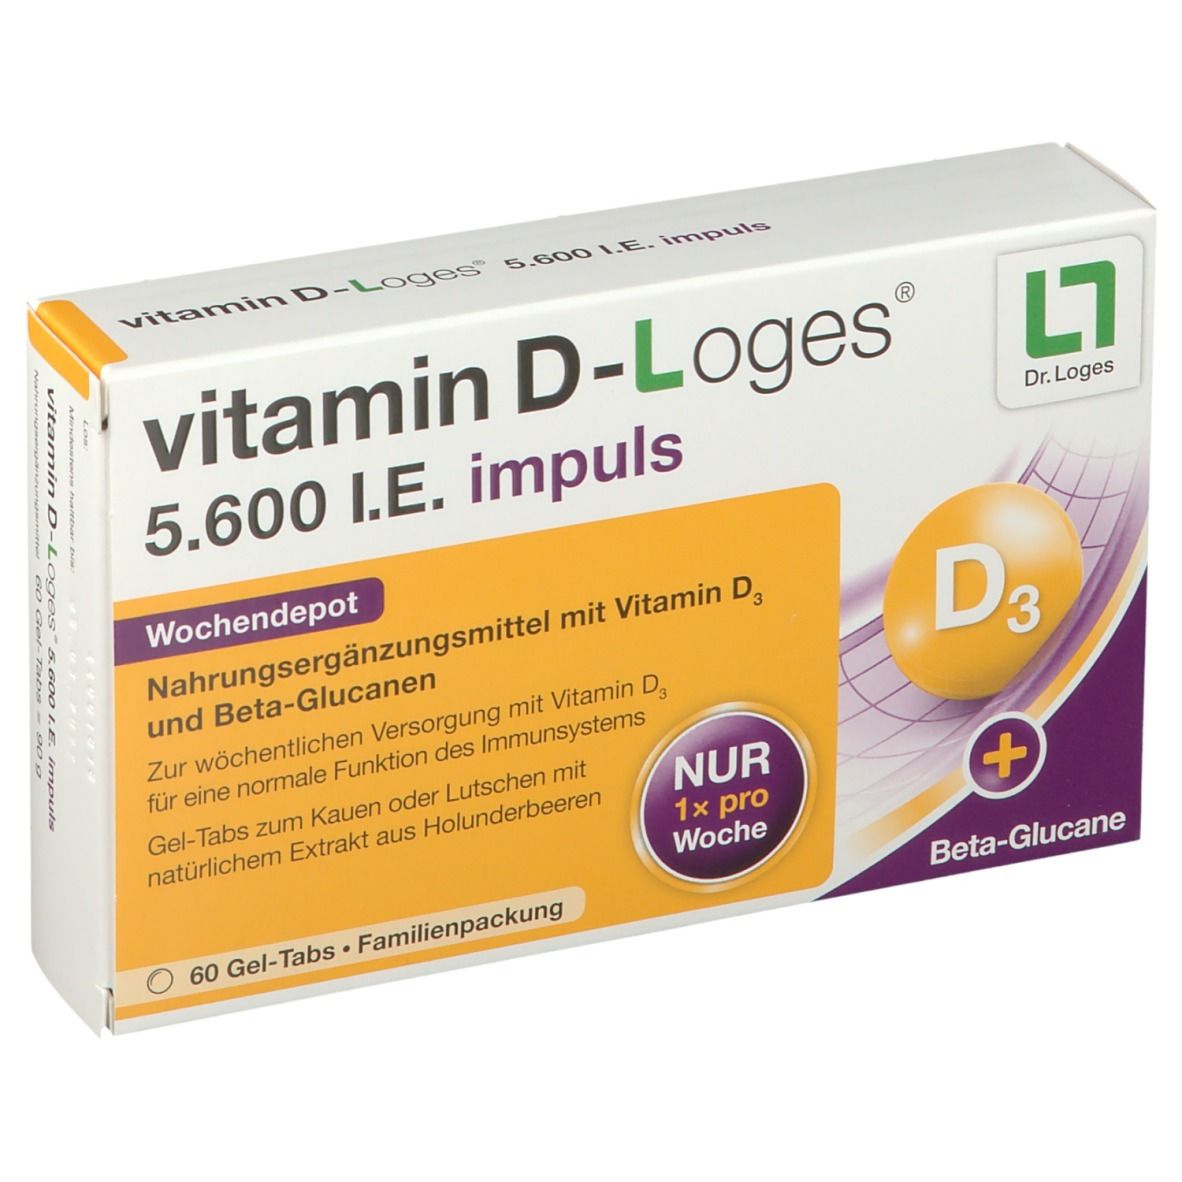 Image of vitamin D-Loges® 5.600 I.E. impuls